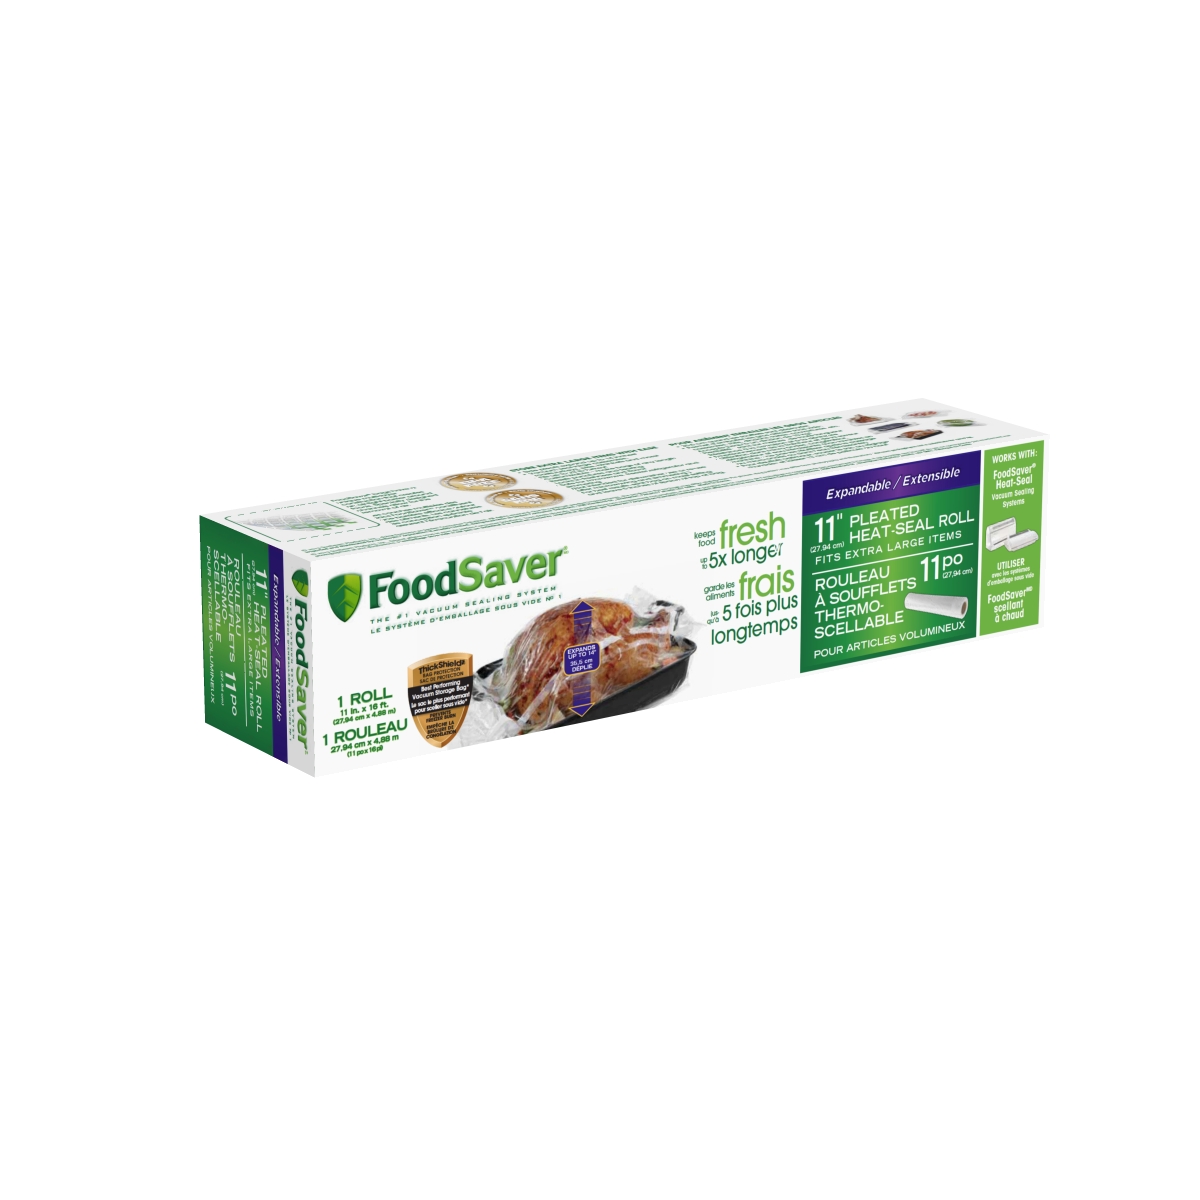 FoodSaver Everyday Système d'emballage sous vide | Conserve la fraîcheur de  vos aliments jusqu'à 5 fois plus longtemps*| Avec 5 sacs d'emballage sous